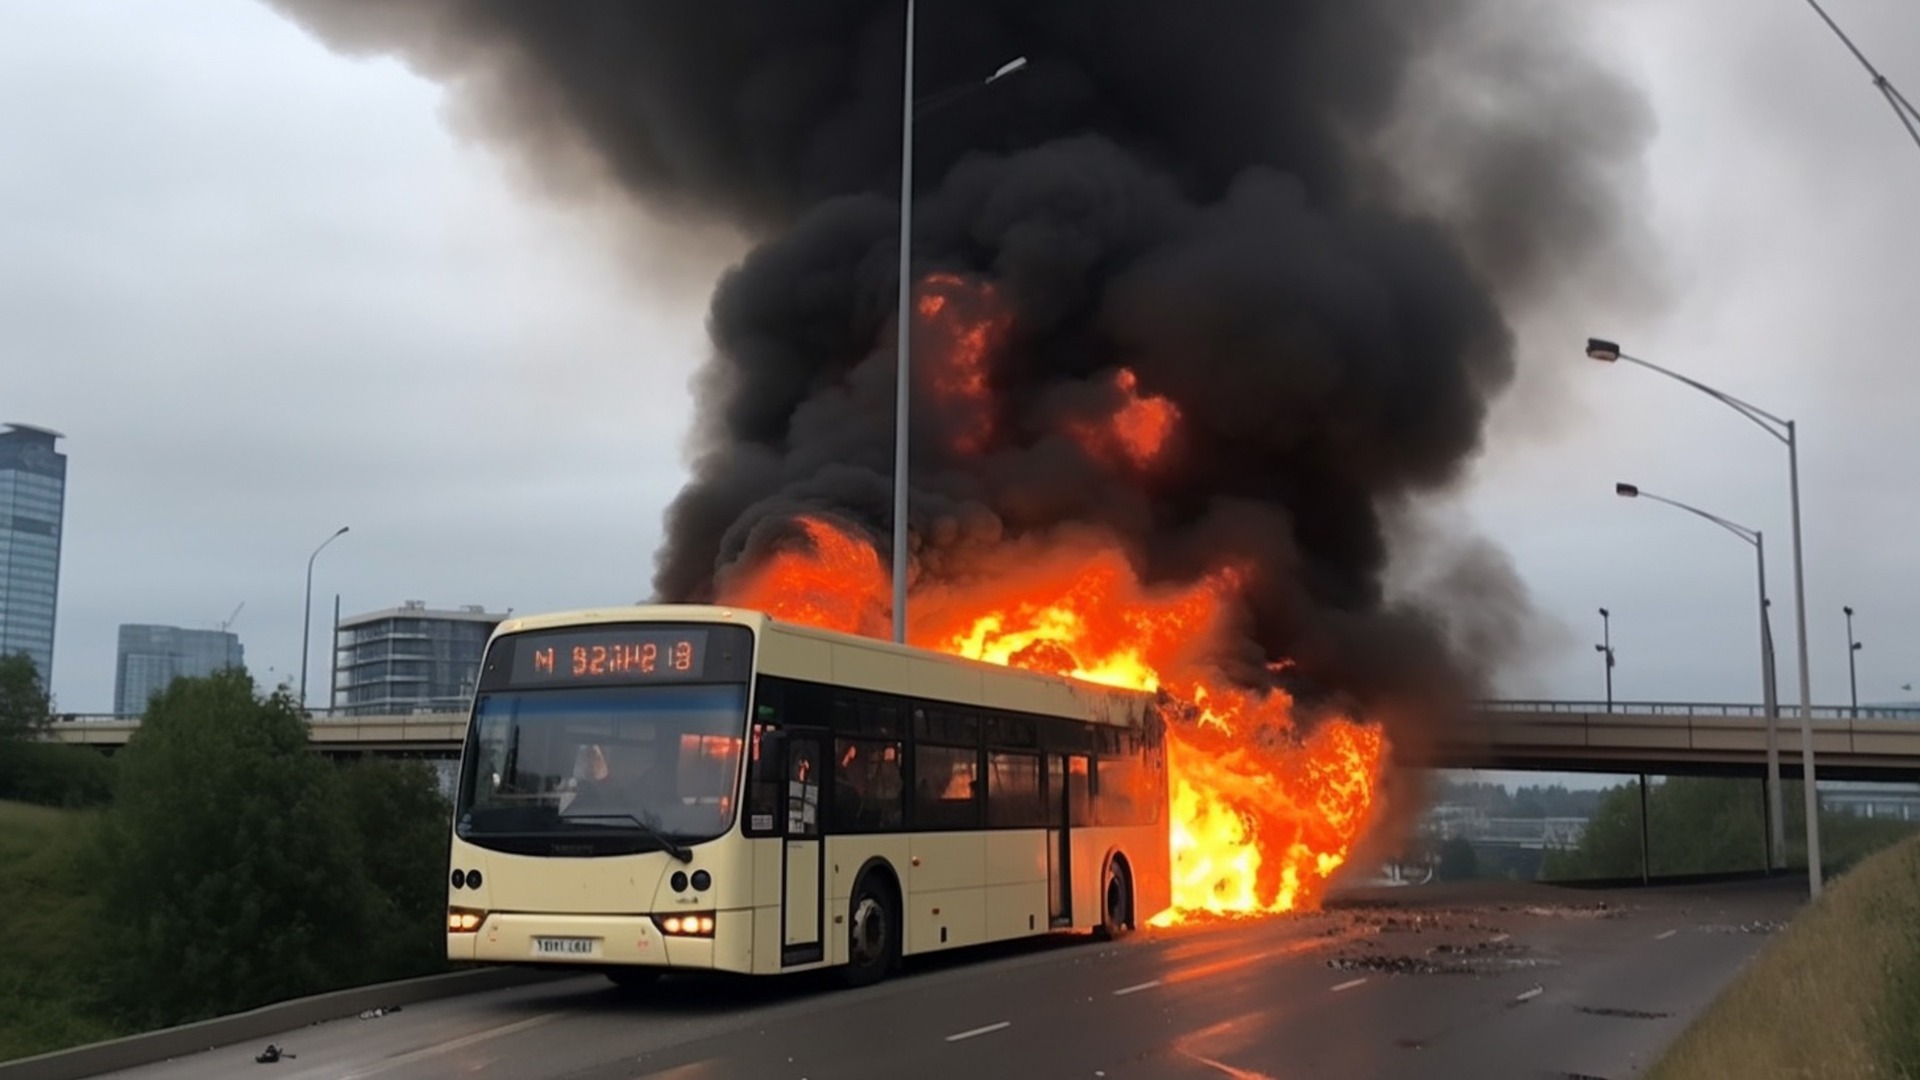 Поездка — огонь: автобус загорелся прямо на ходу во Владивостоке — видео